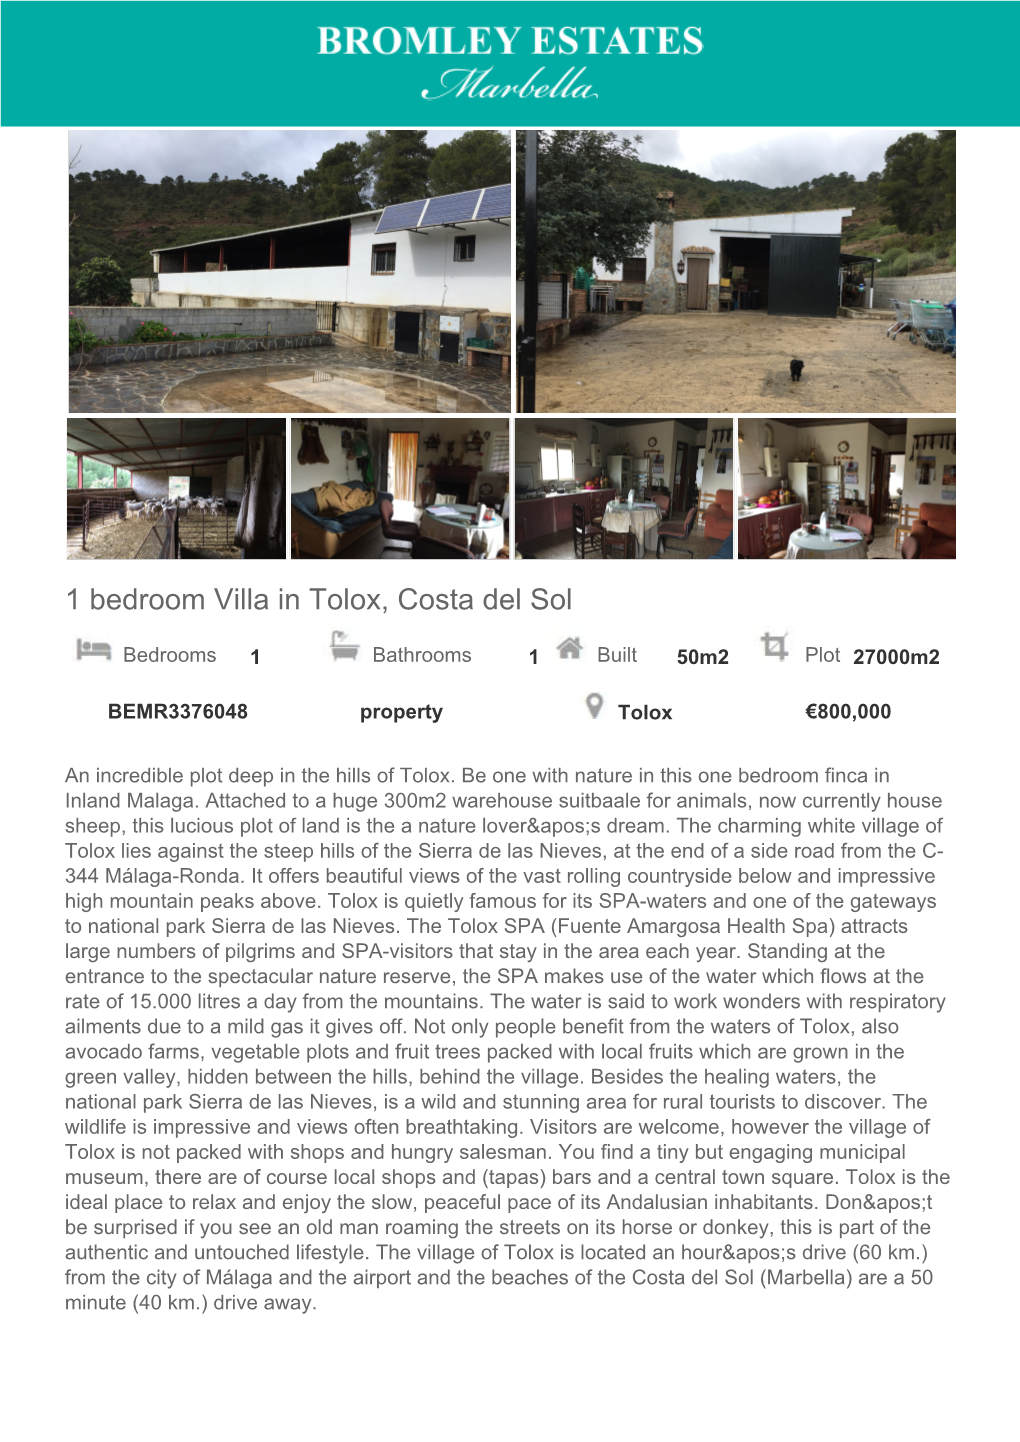 1 Bedroom Villa in Tolox, Costa Del Sol